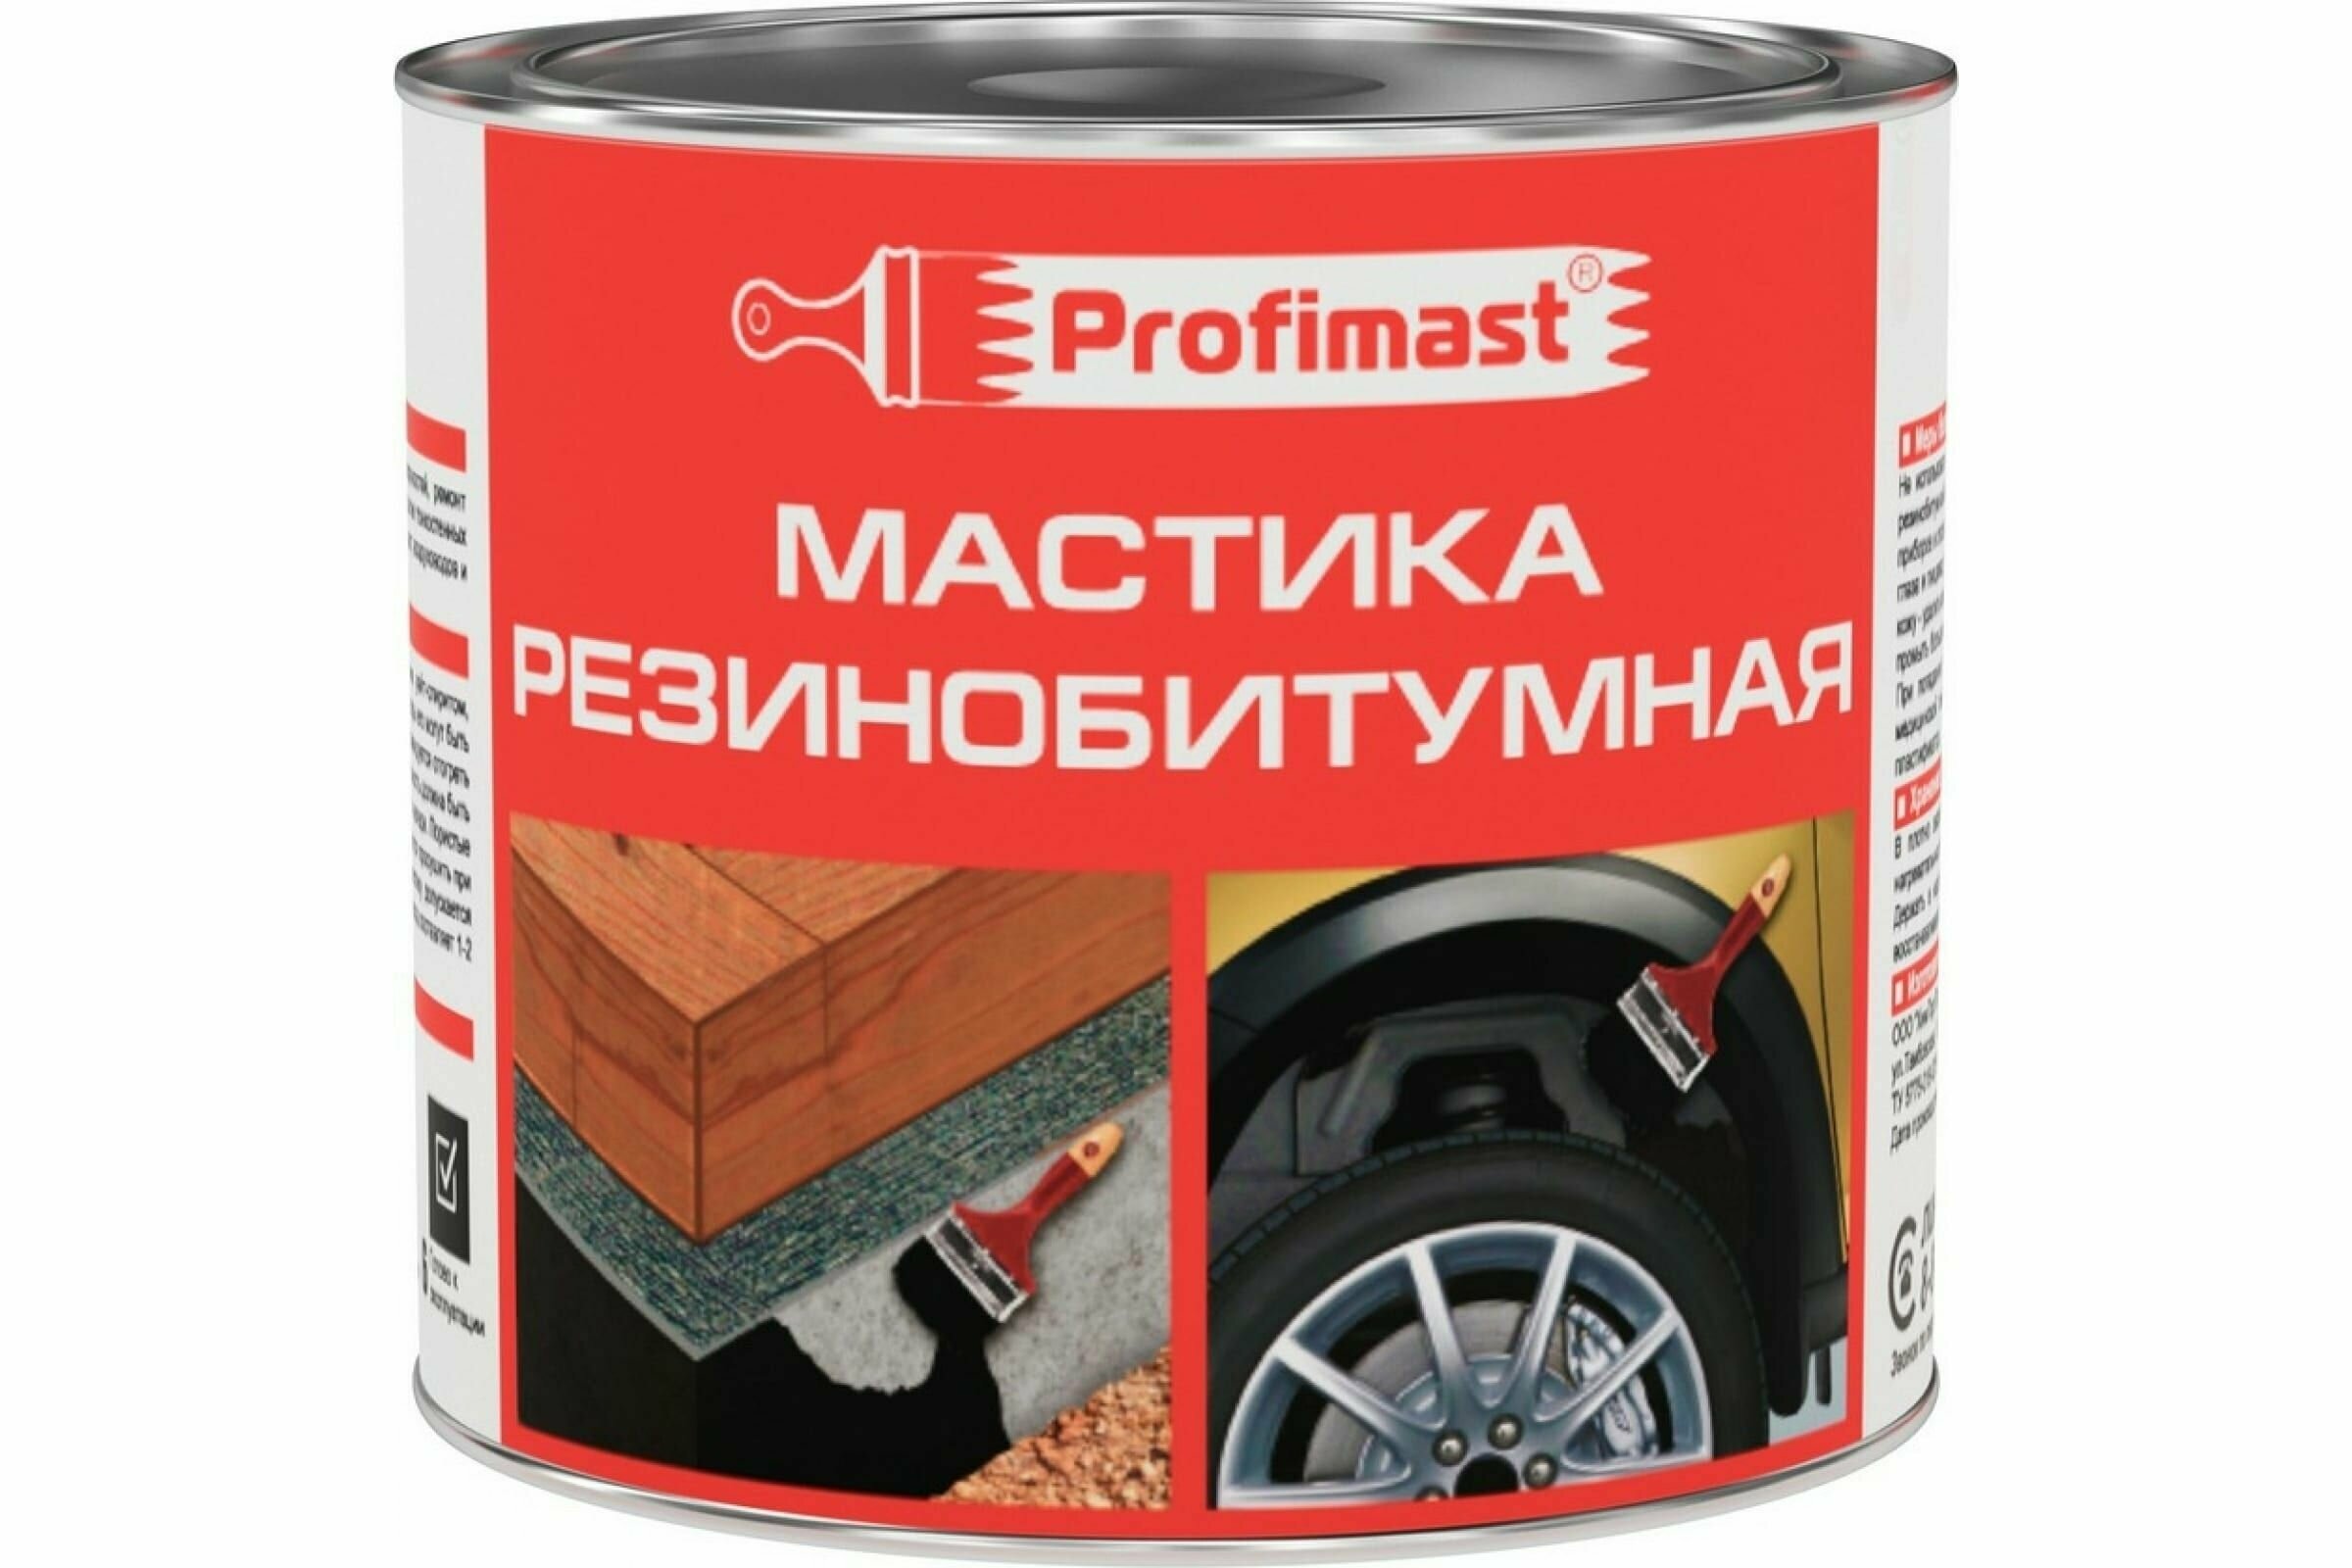 Резинобитумная мастика Profimast 2 л / 18 кг